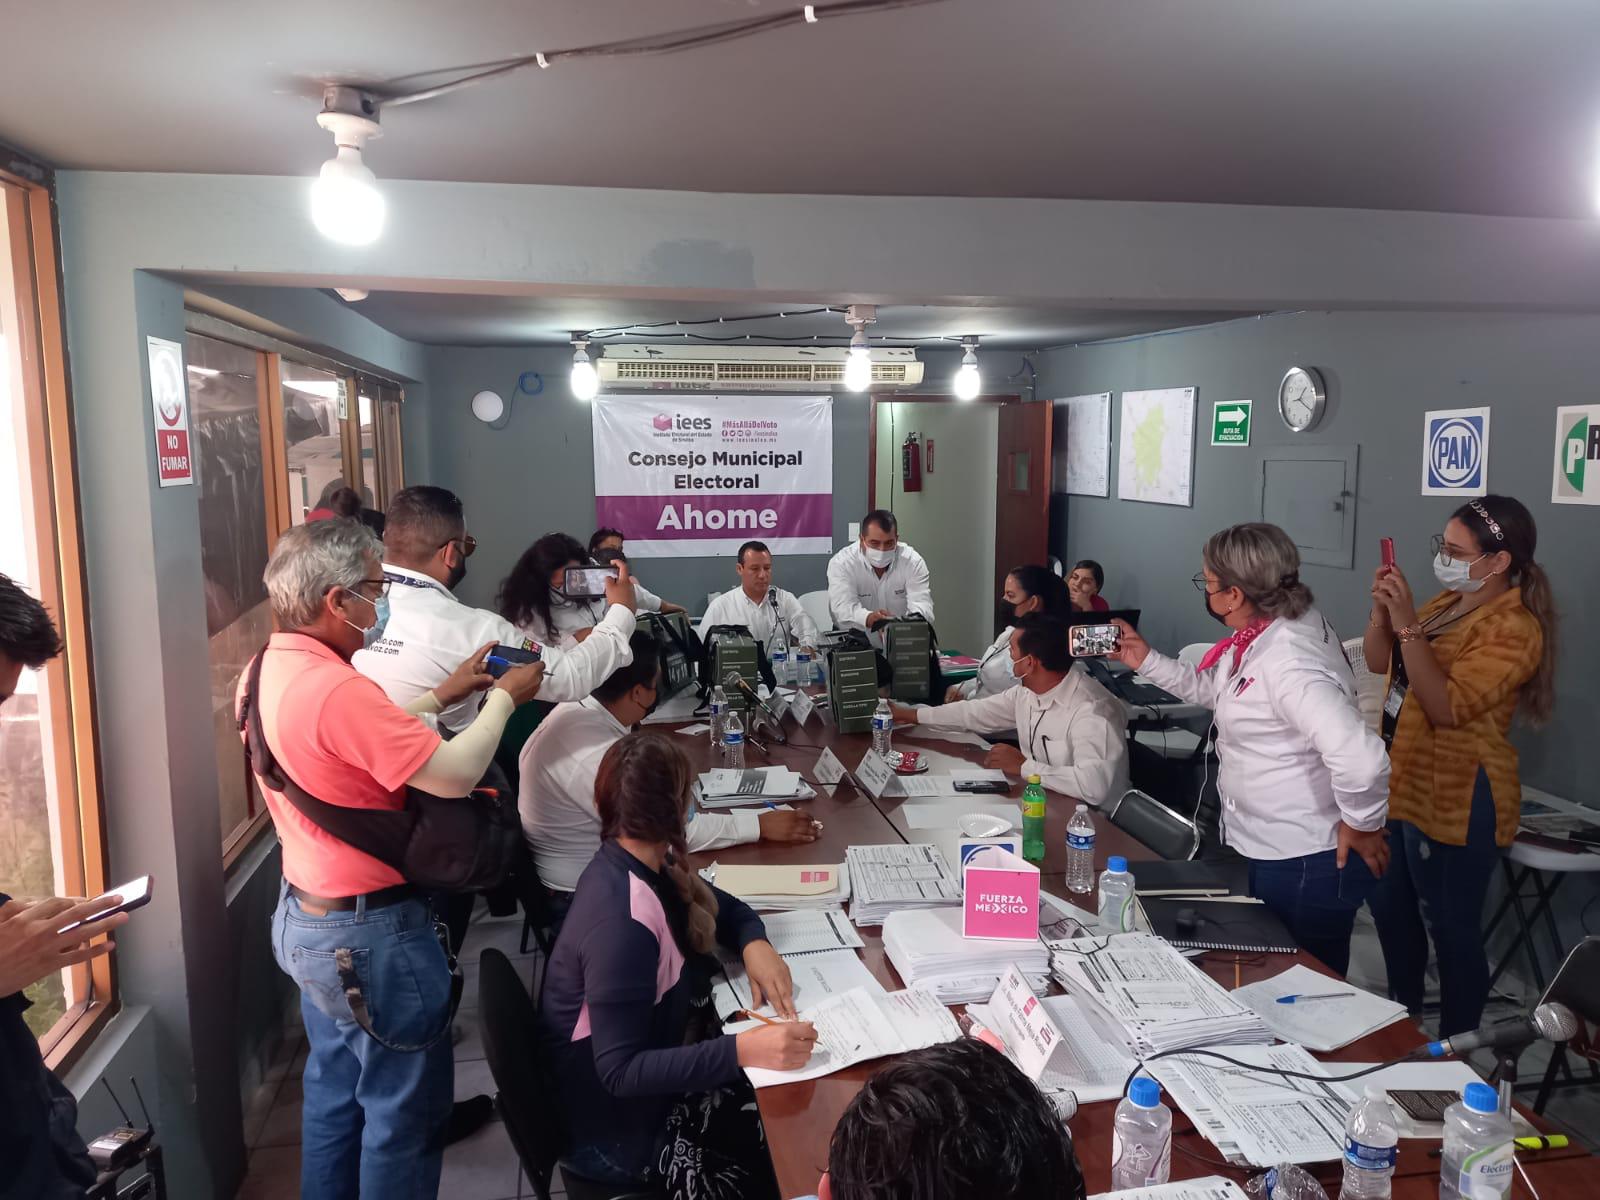 $!Aprueba Consejo Municipal Electoral de Ahome dejar fuera 15 casillas comprometidas; todavía hay perdidas